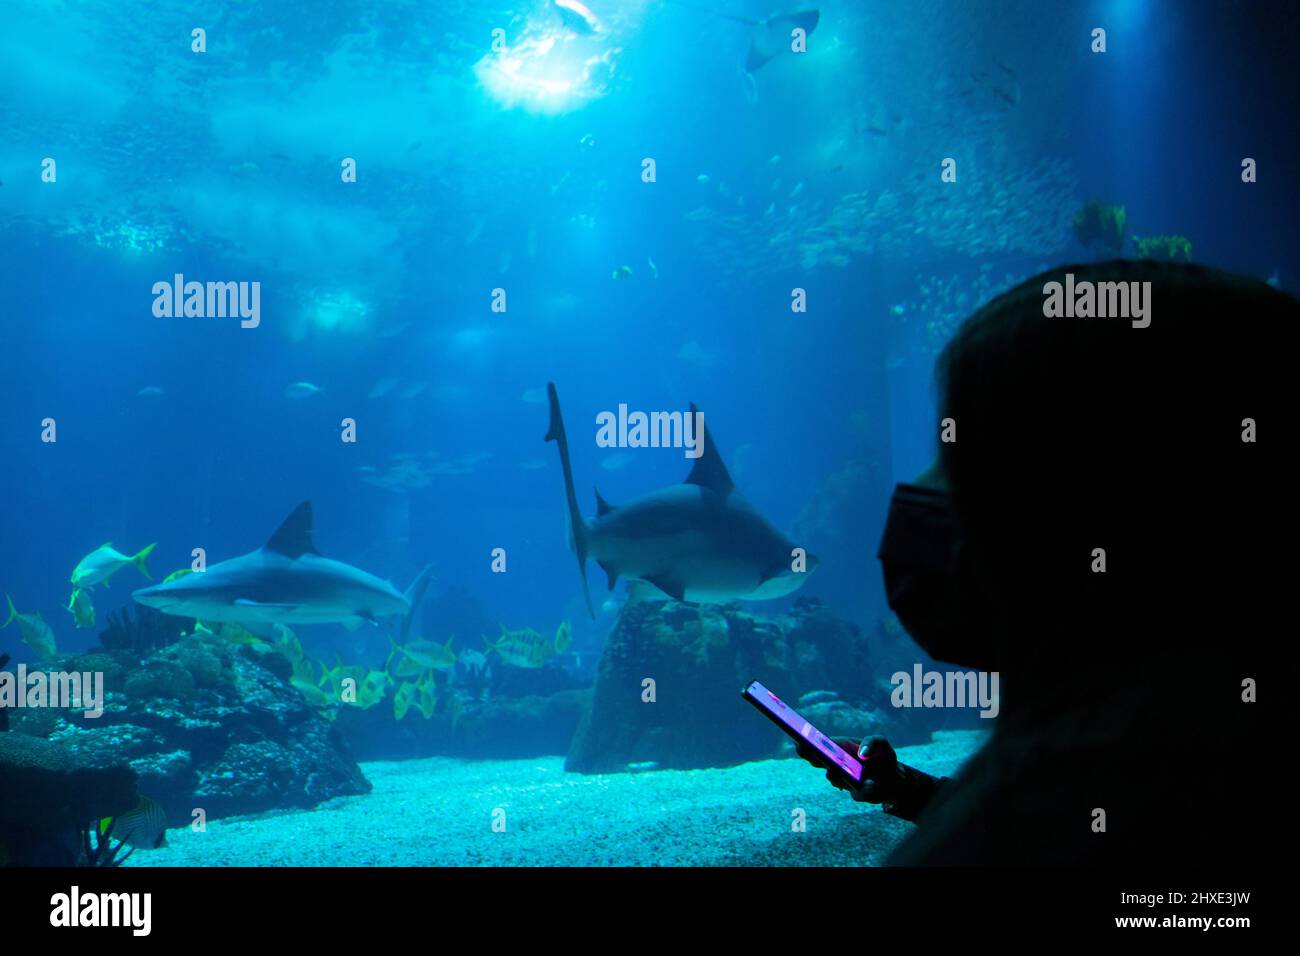 Junges Mädchen, das Haie auf einem großen Aquarium beobachtet. Meeresbeobachtung zu Bildungszwecken. Stockfoto